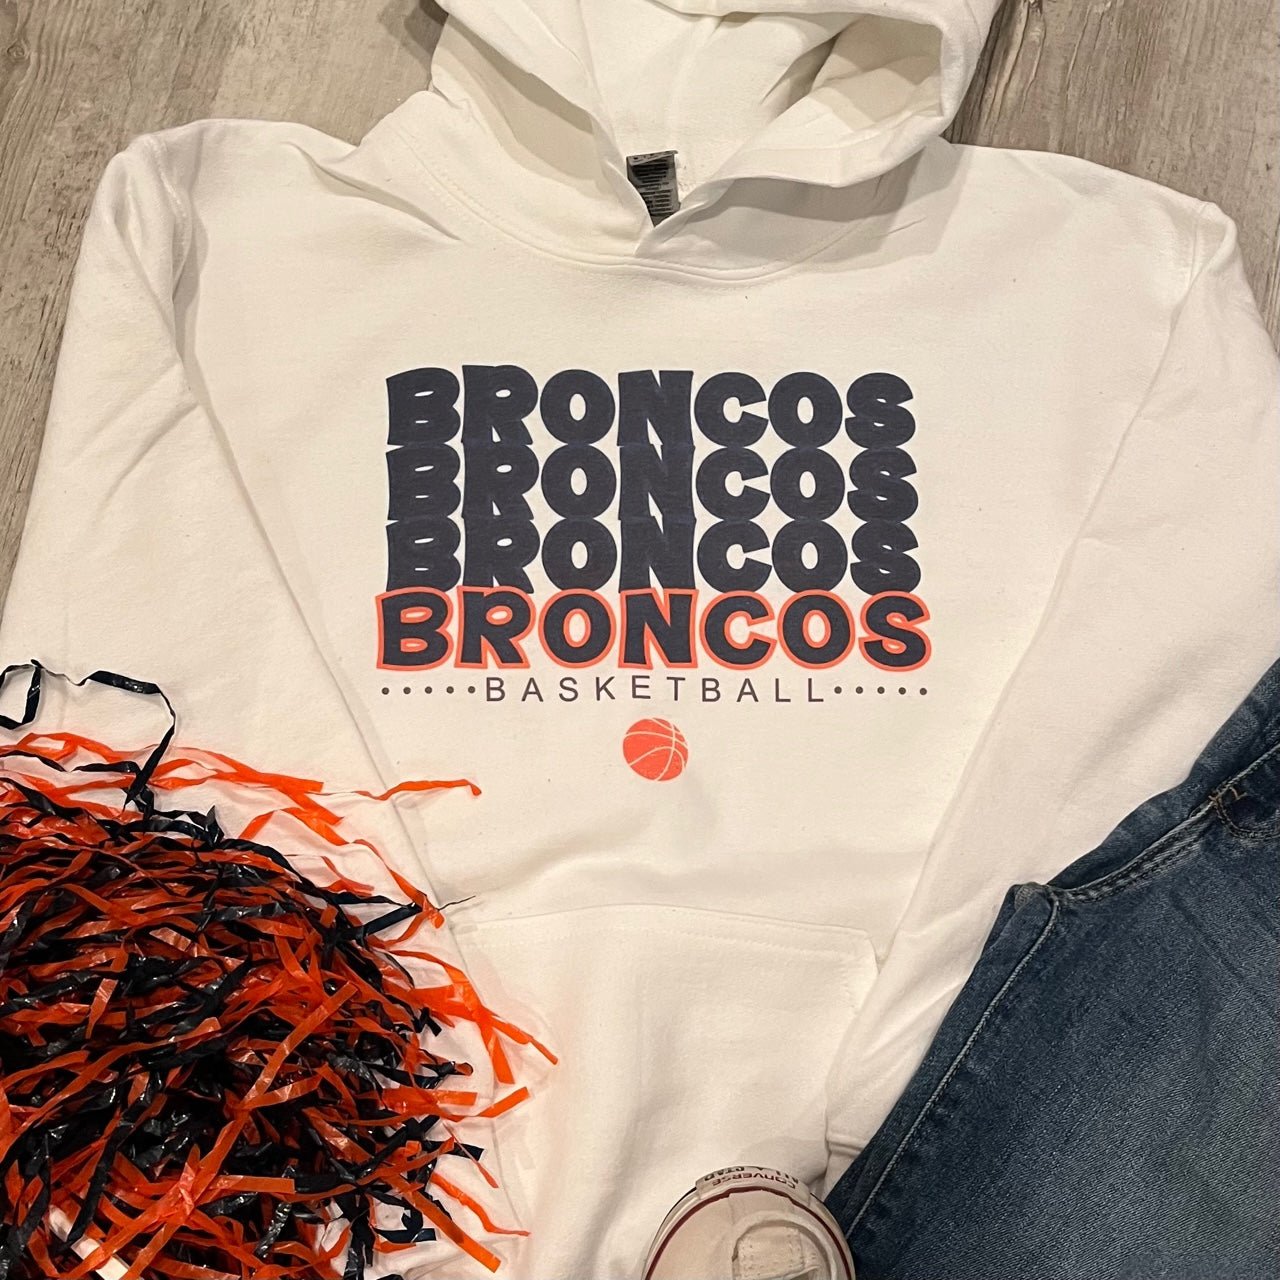 Broncos Broncos Broncos Basketball Shirt